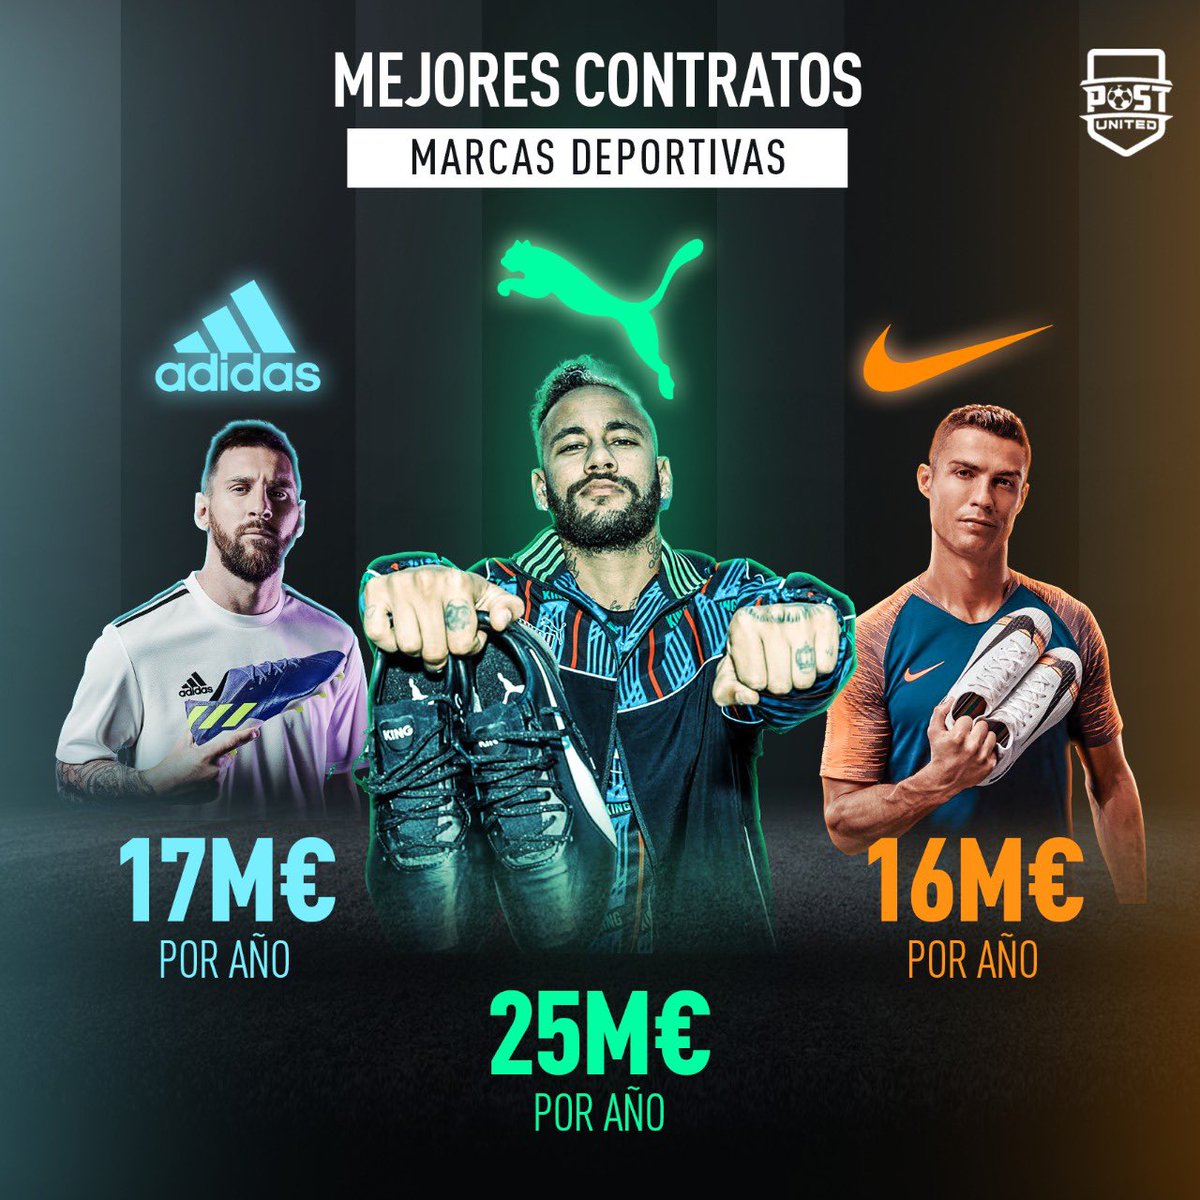 Comprometido Ópera Superar Post United on Twitter: "💸 El nuevo contrato de @neymarjr con Puma supera  a los de Leo Messi con Adidas y @Cristiano con Nike  https://t.co/GWK67GddXT" / Twitter